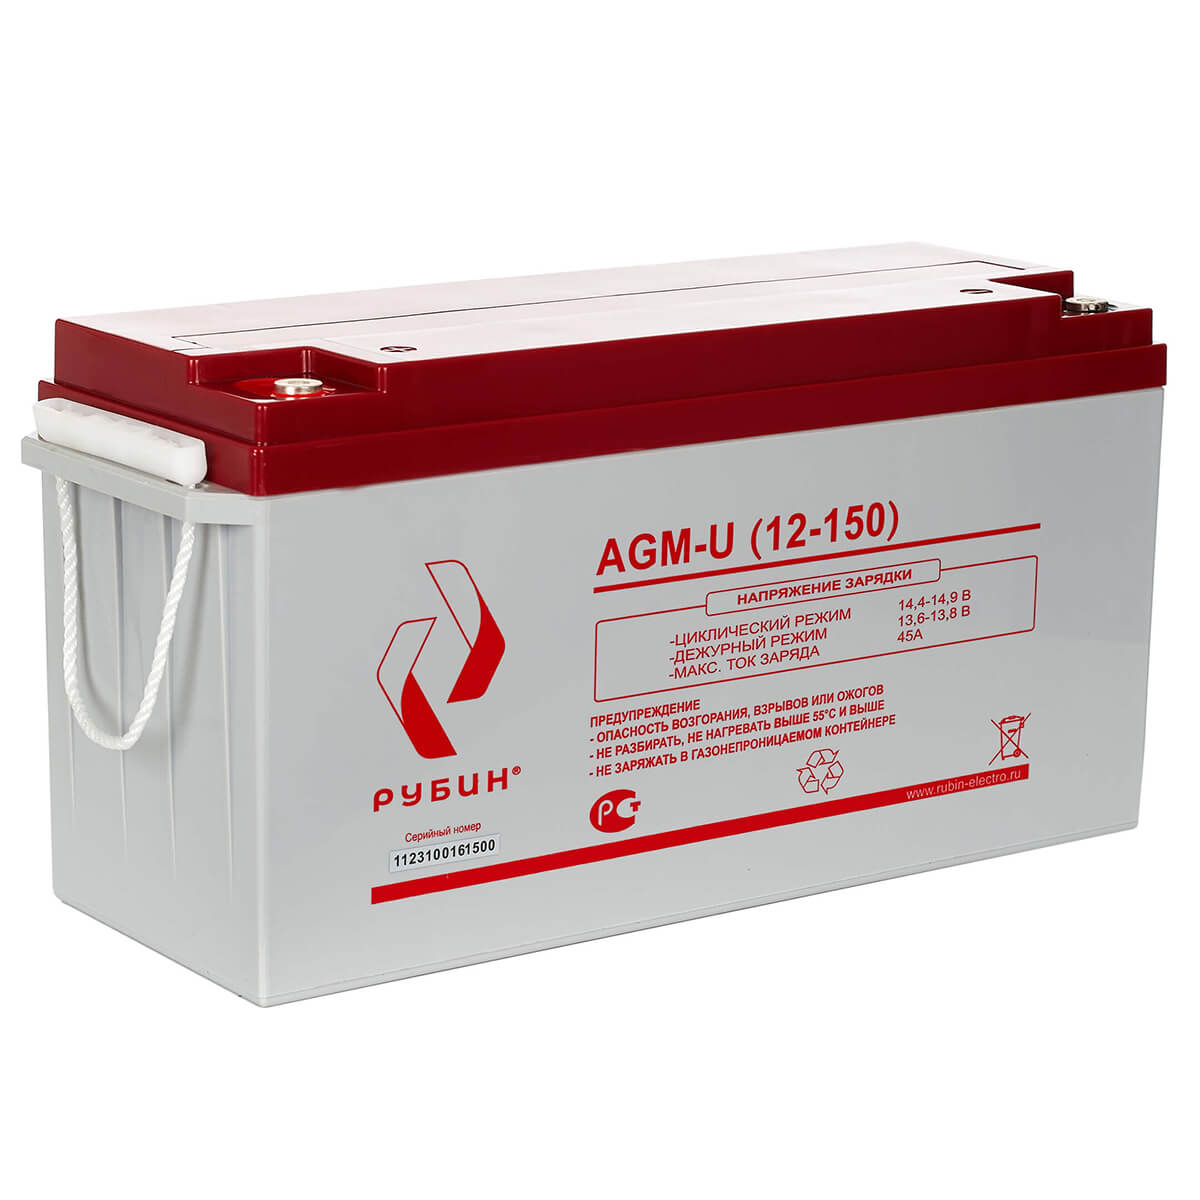 Рубин AGM-U (12-150)